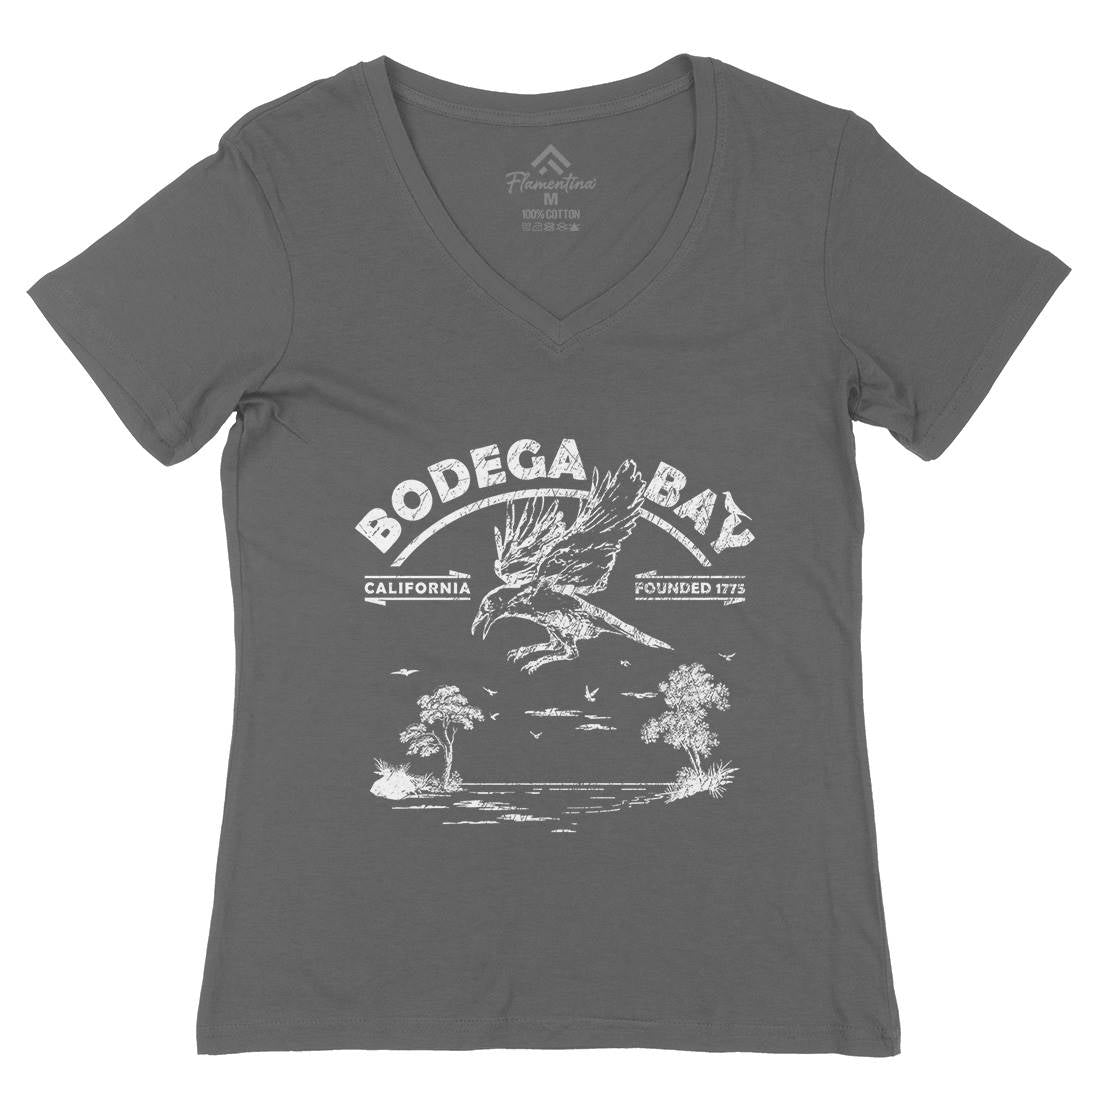 Bodega Bay Womens Organic V-Neck T-Shirt Horror D310